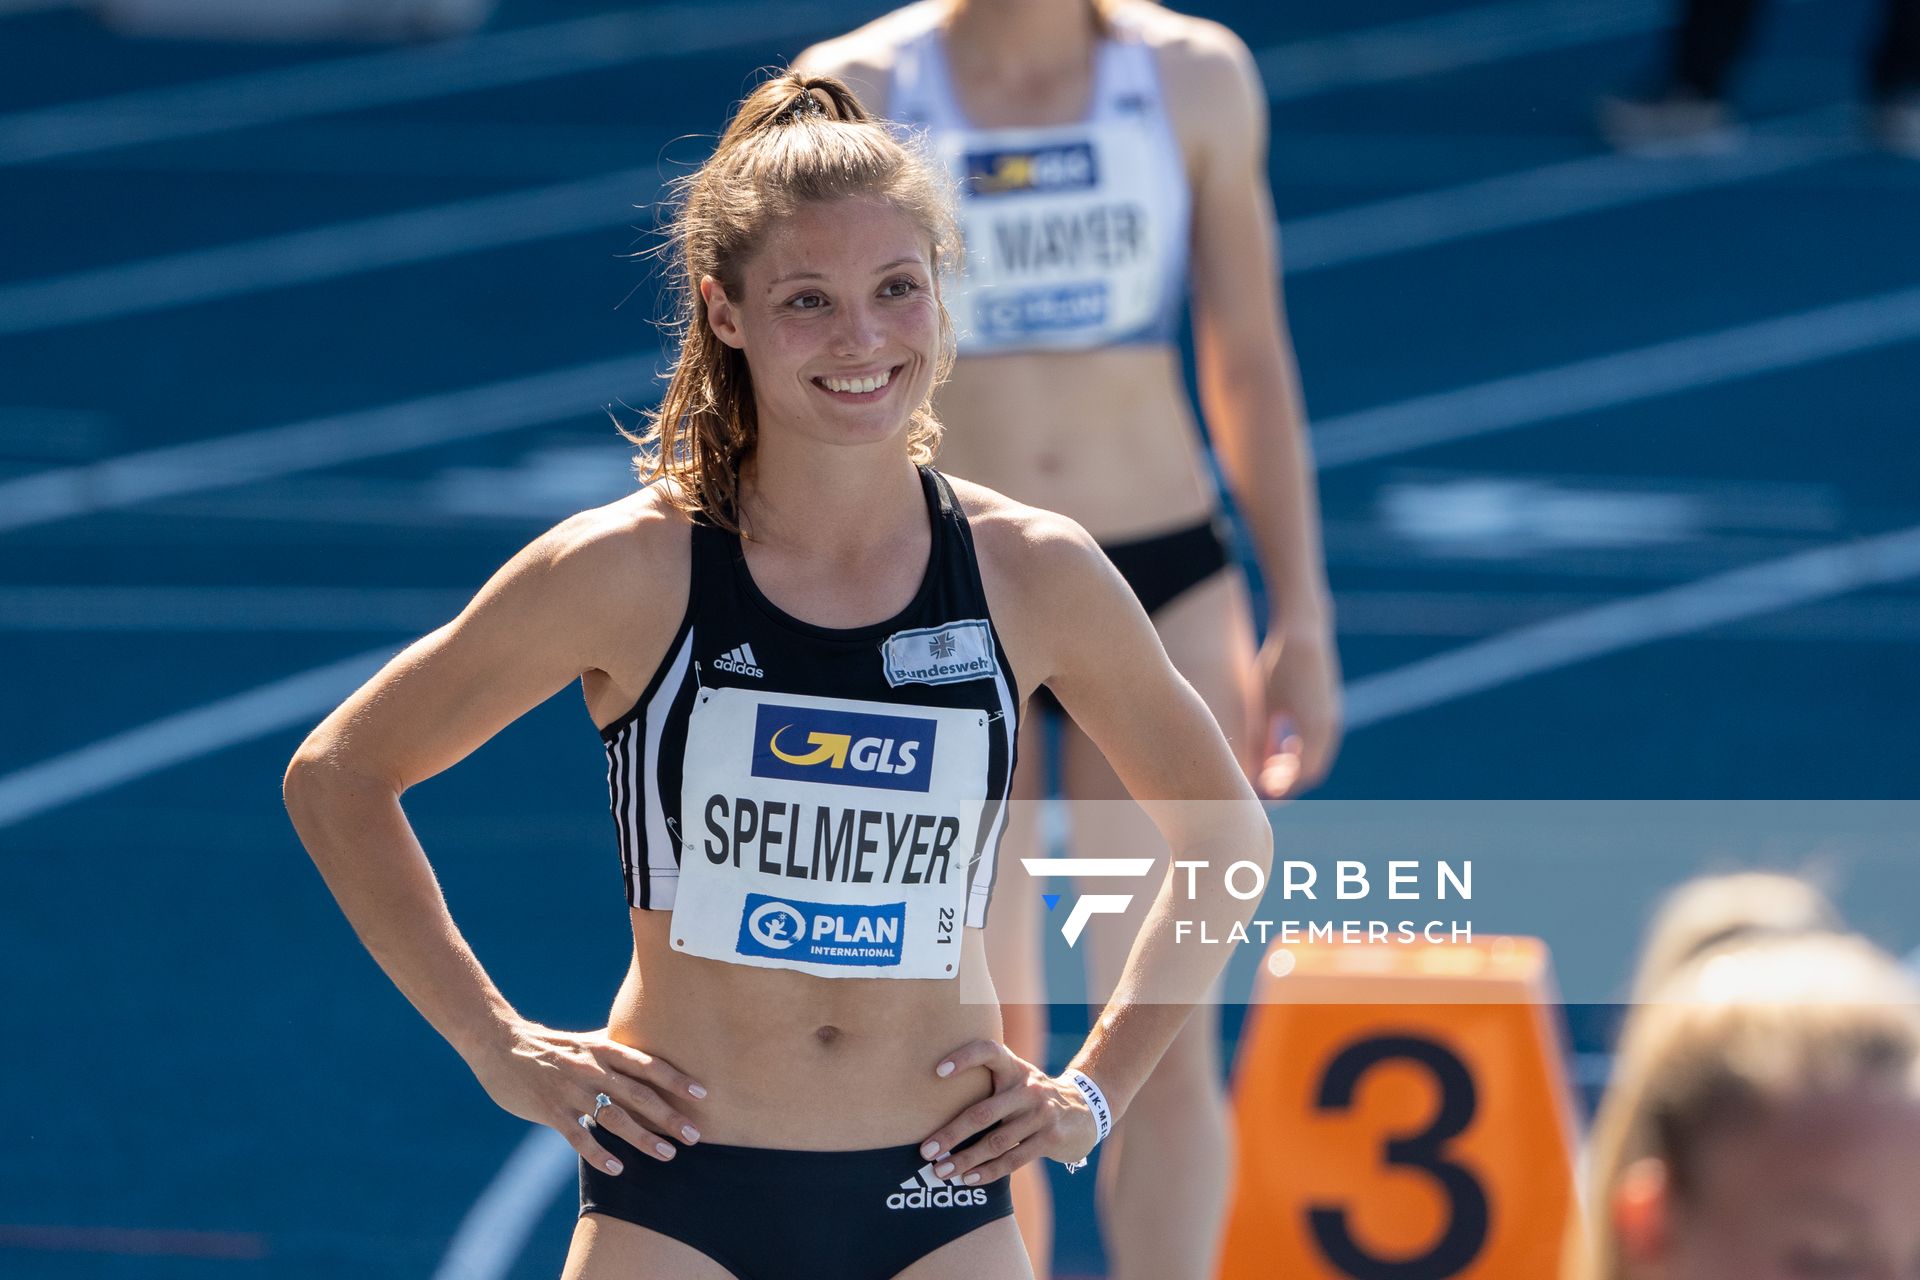 Ruth Sophia Spelmeyer (VfL Oldenburg) ueber 400m am 08.08.2020 waehrend den deutschen Leichtathletik-Meisterschaften 2020 im Eintracht-Stadion in Braunschweig